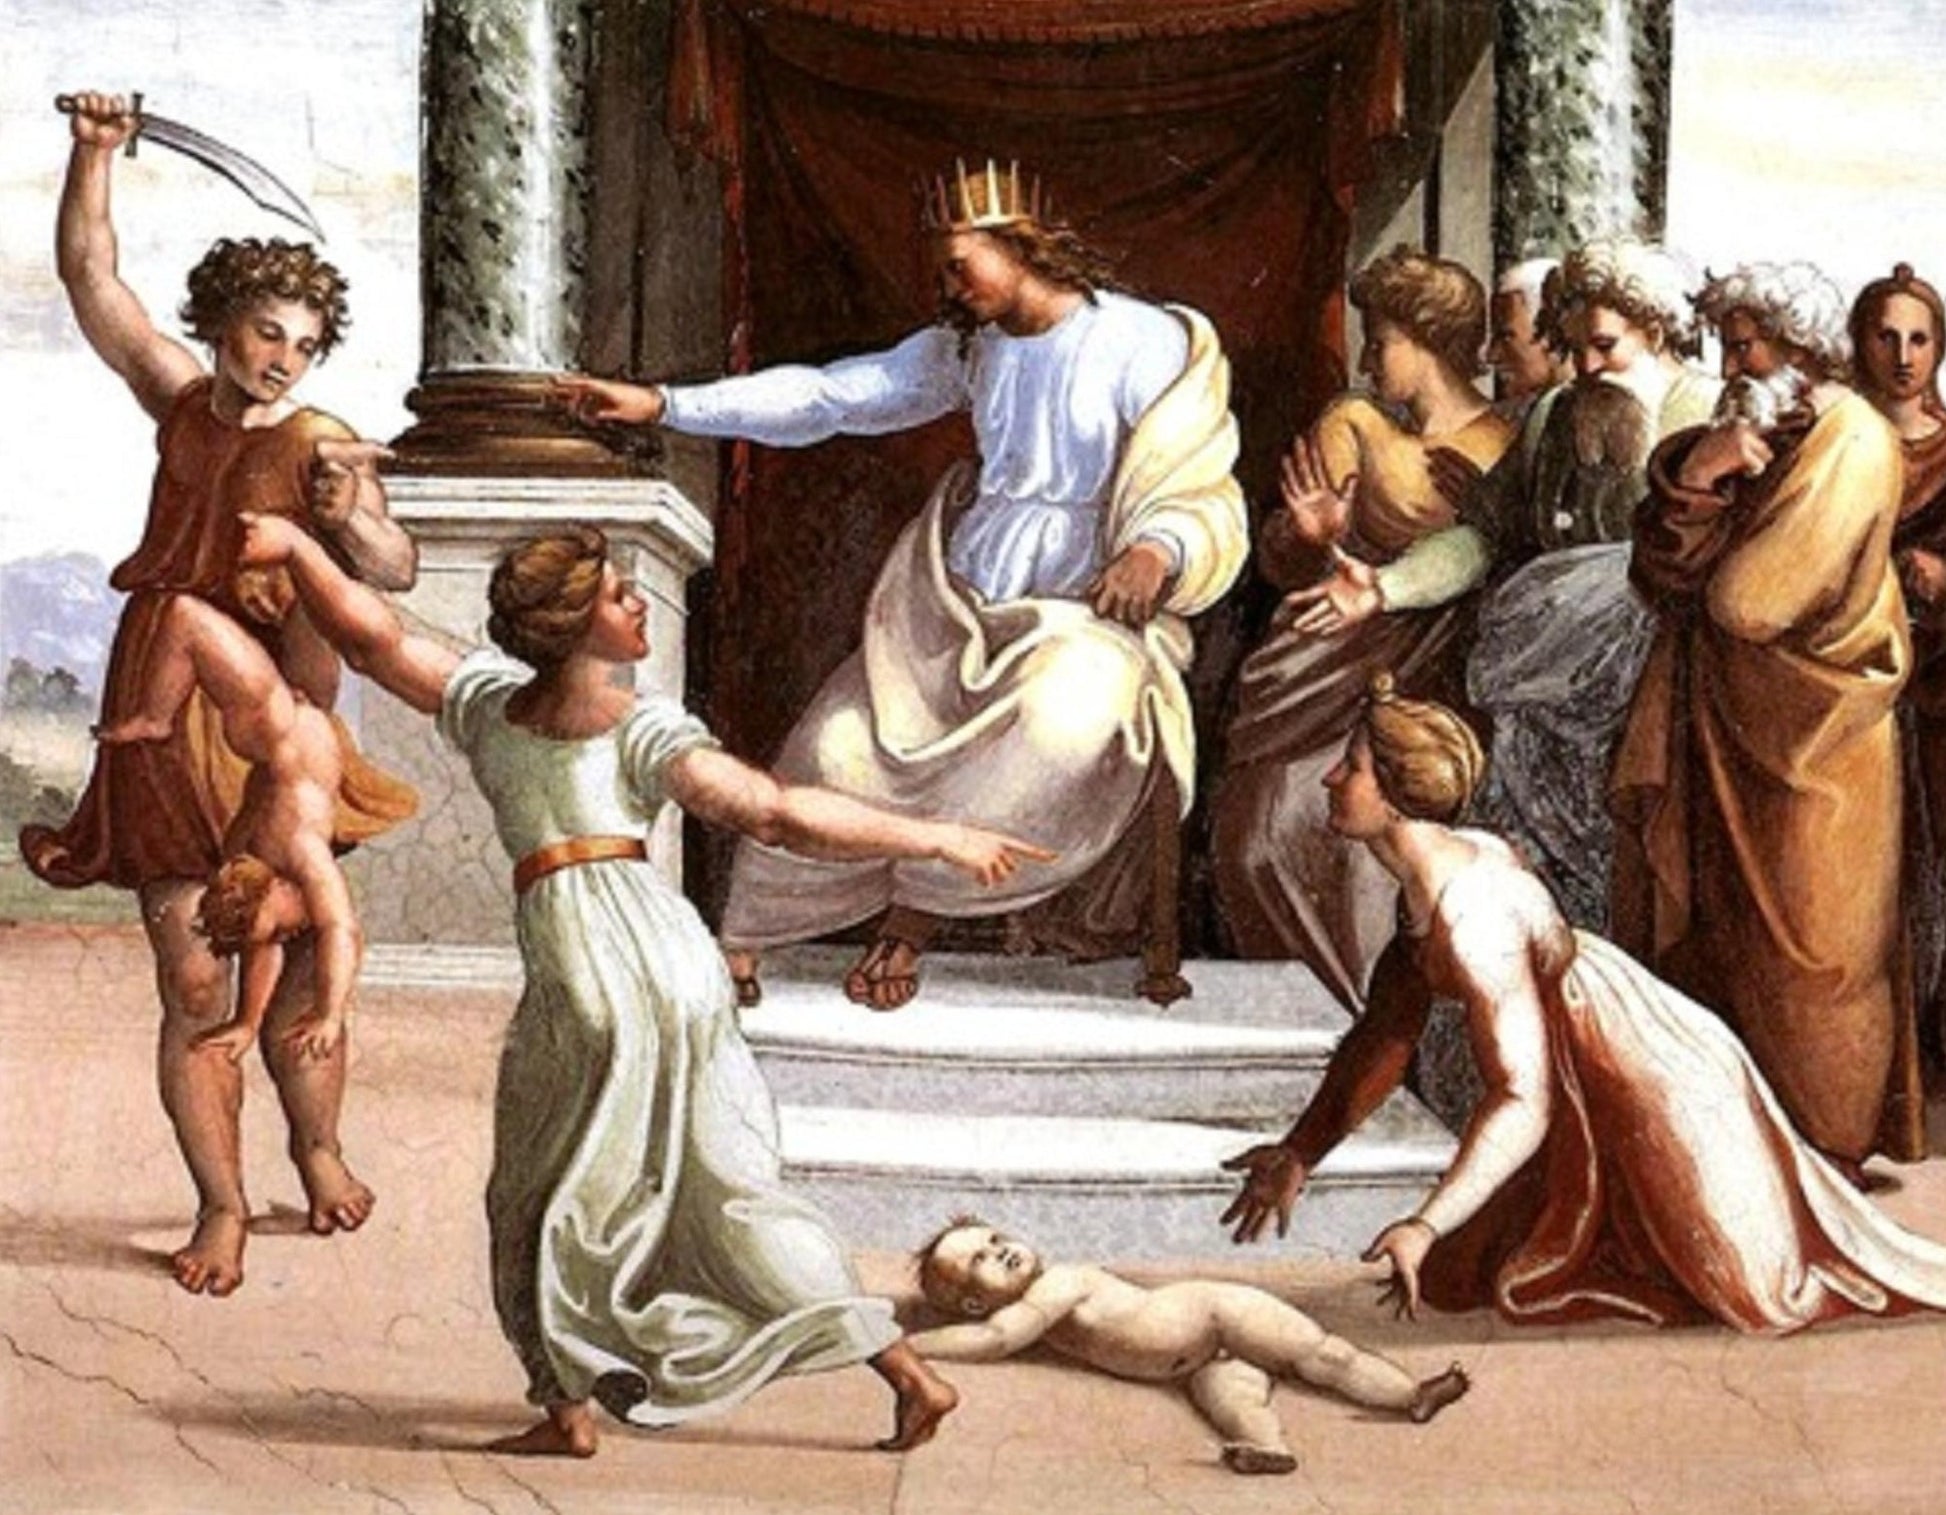 Le jugement Salomos - Raphaël (peintre)